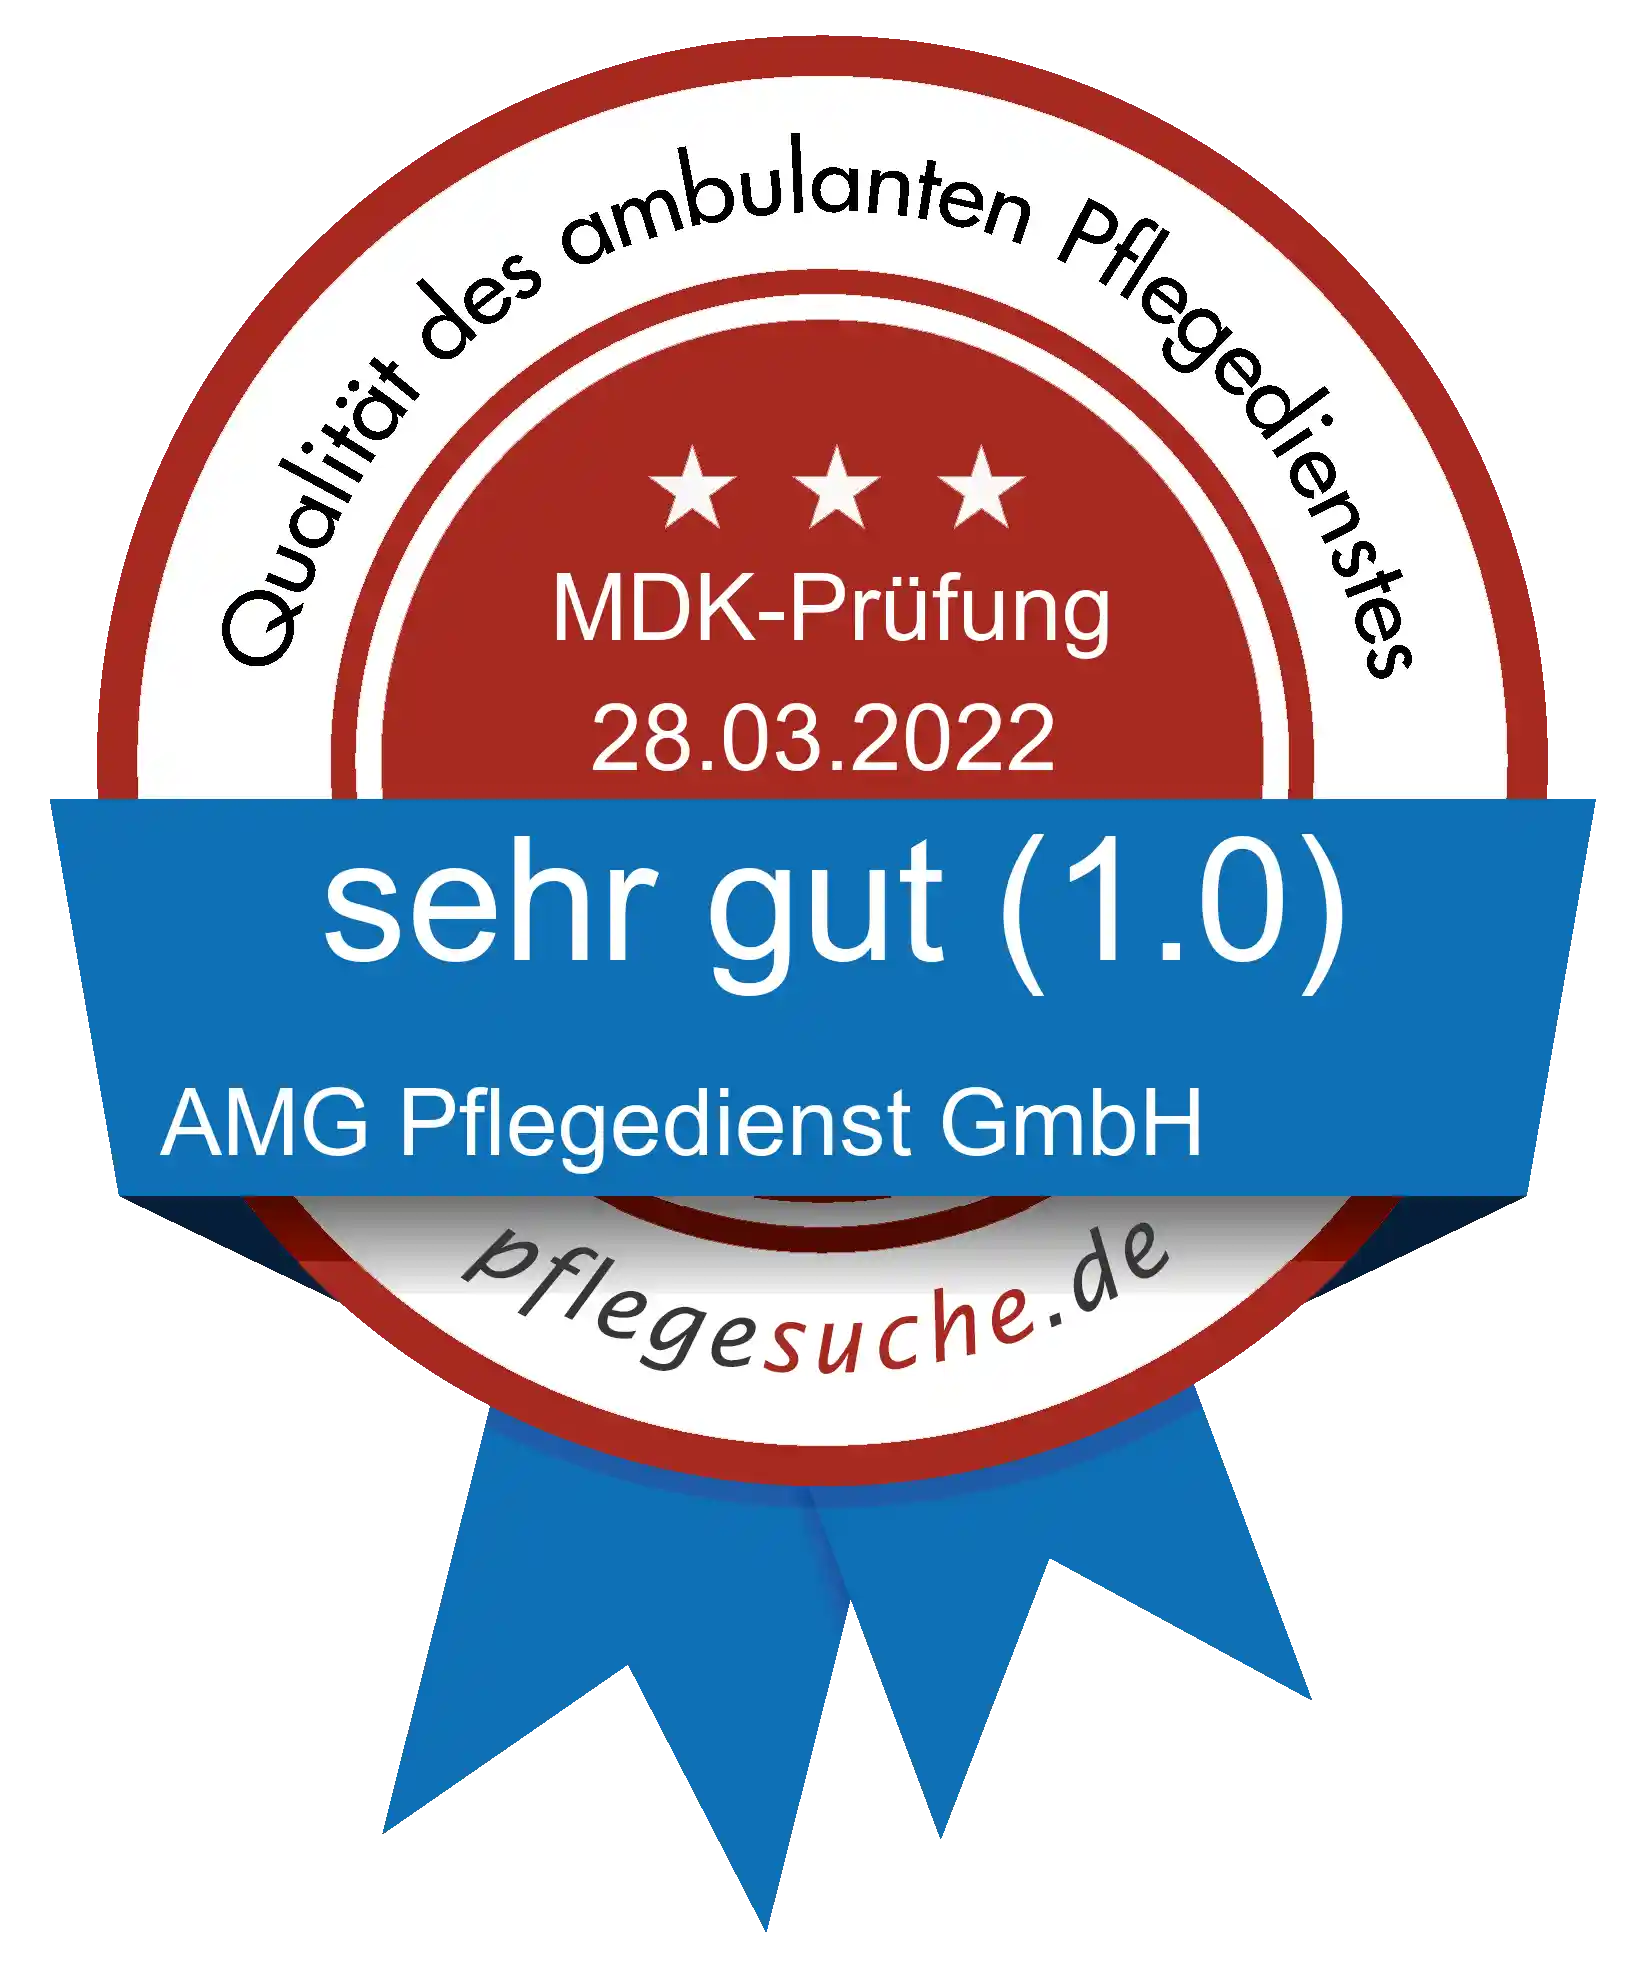 Siegel Benotung: AMG Pflegedienst GmbH